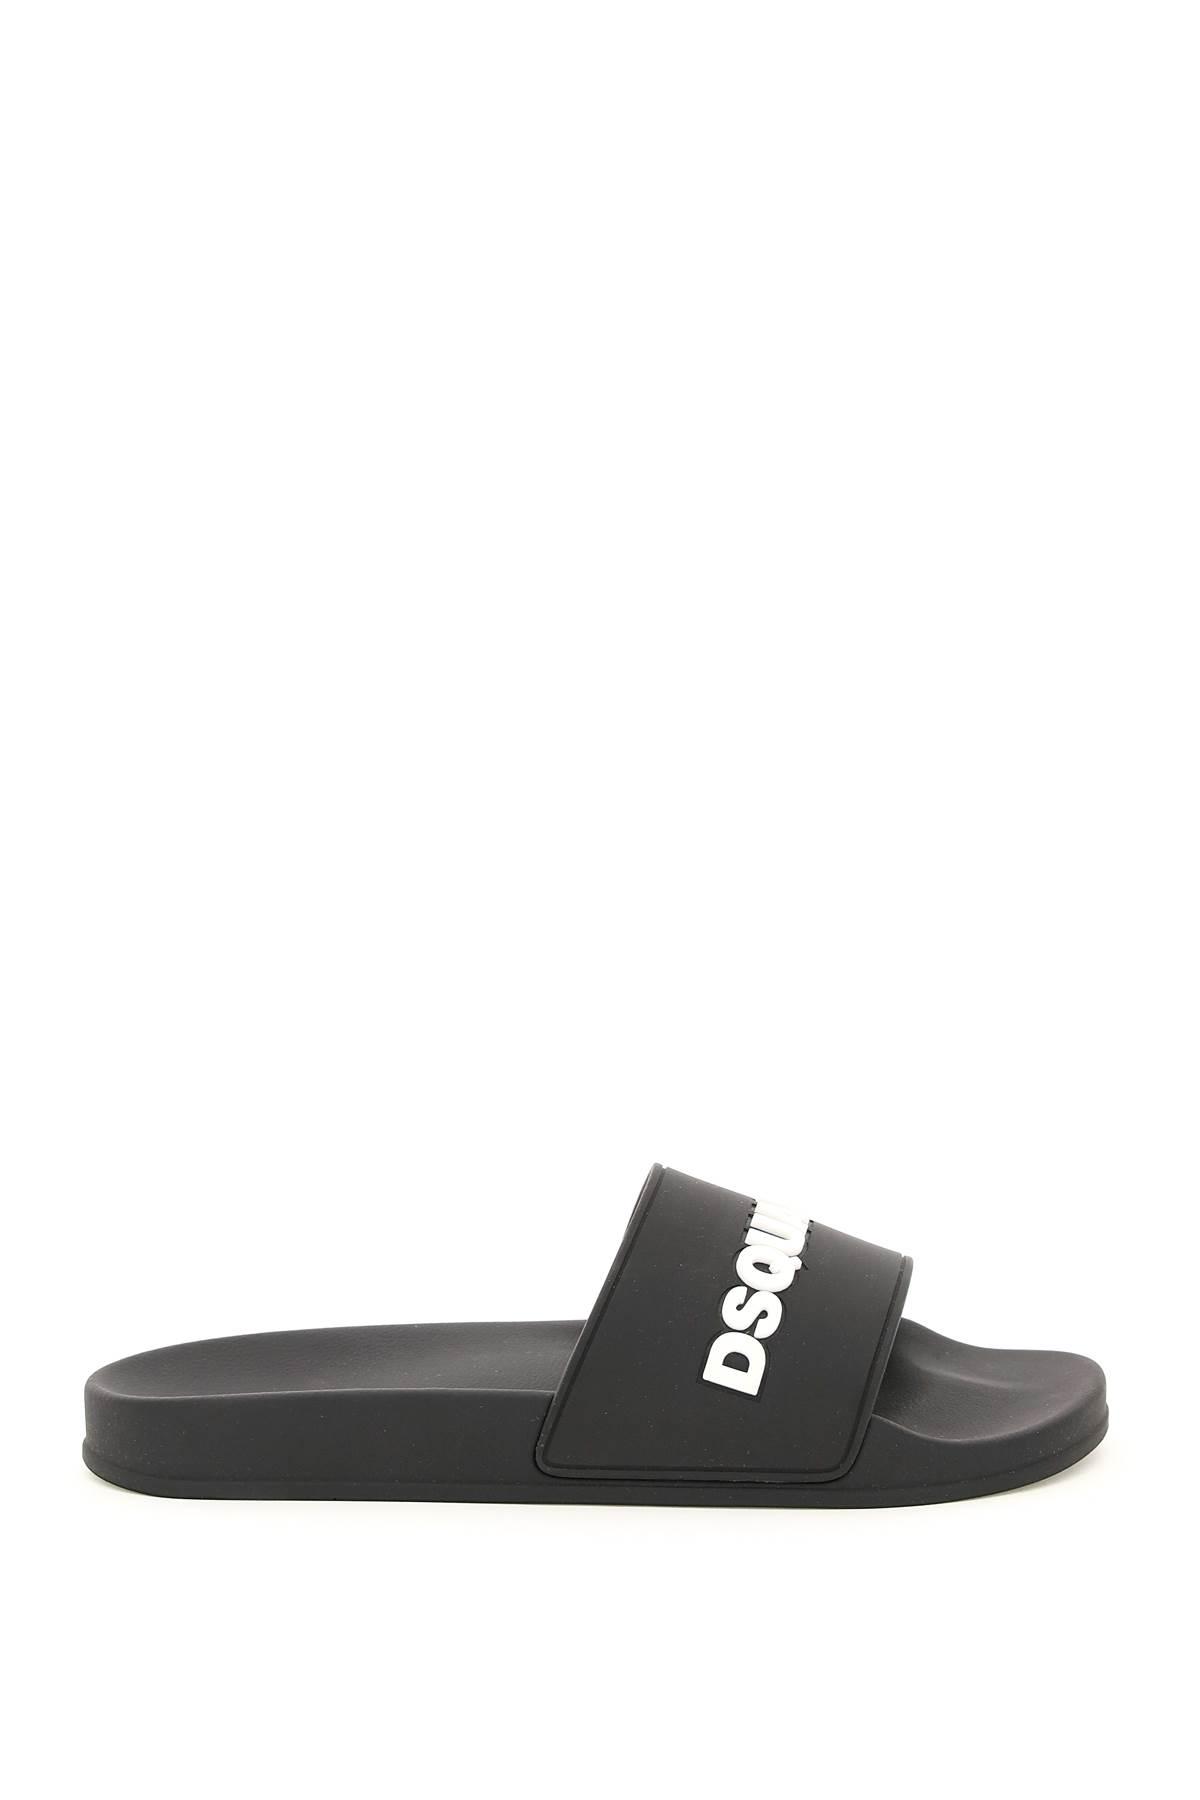 for Men Mens Shoes Sandals slides and flip flops Sandals and flip-flops White DSquared² Rubber Slide Sandals in Nero 